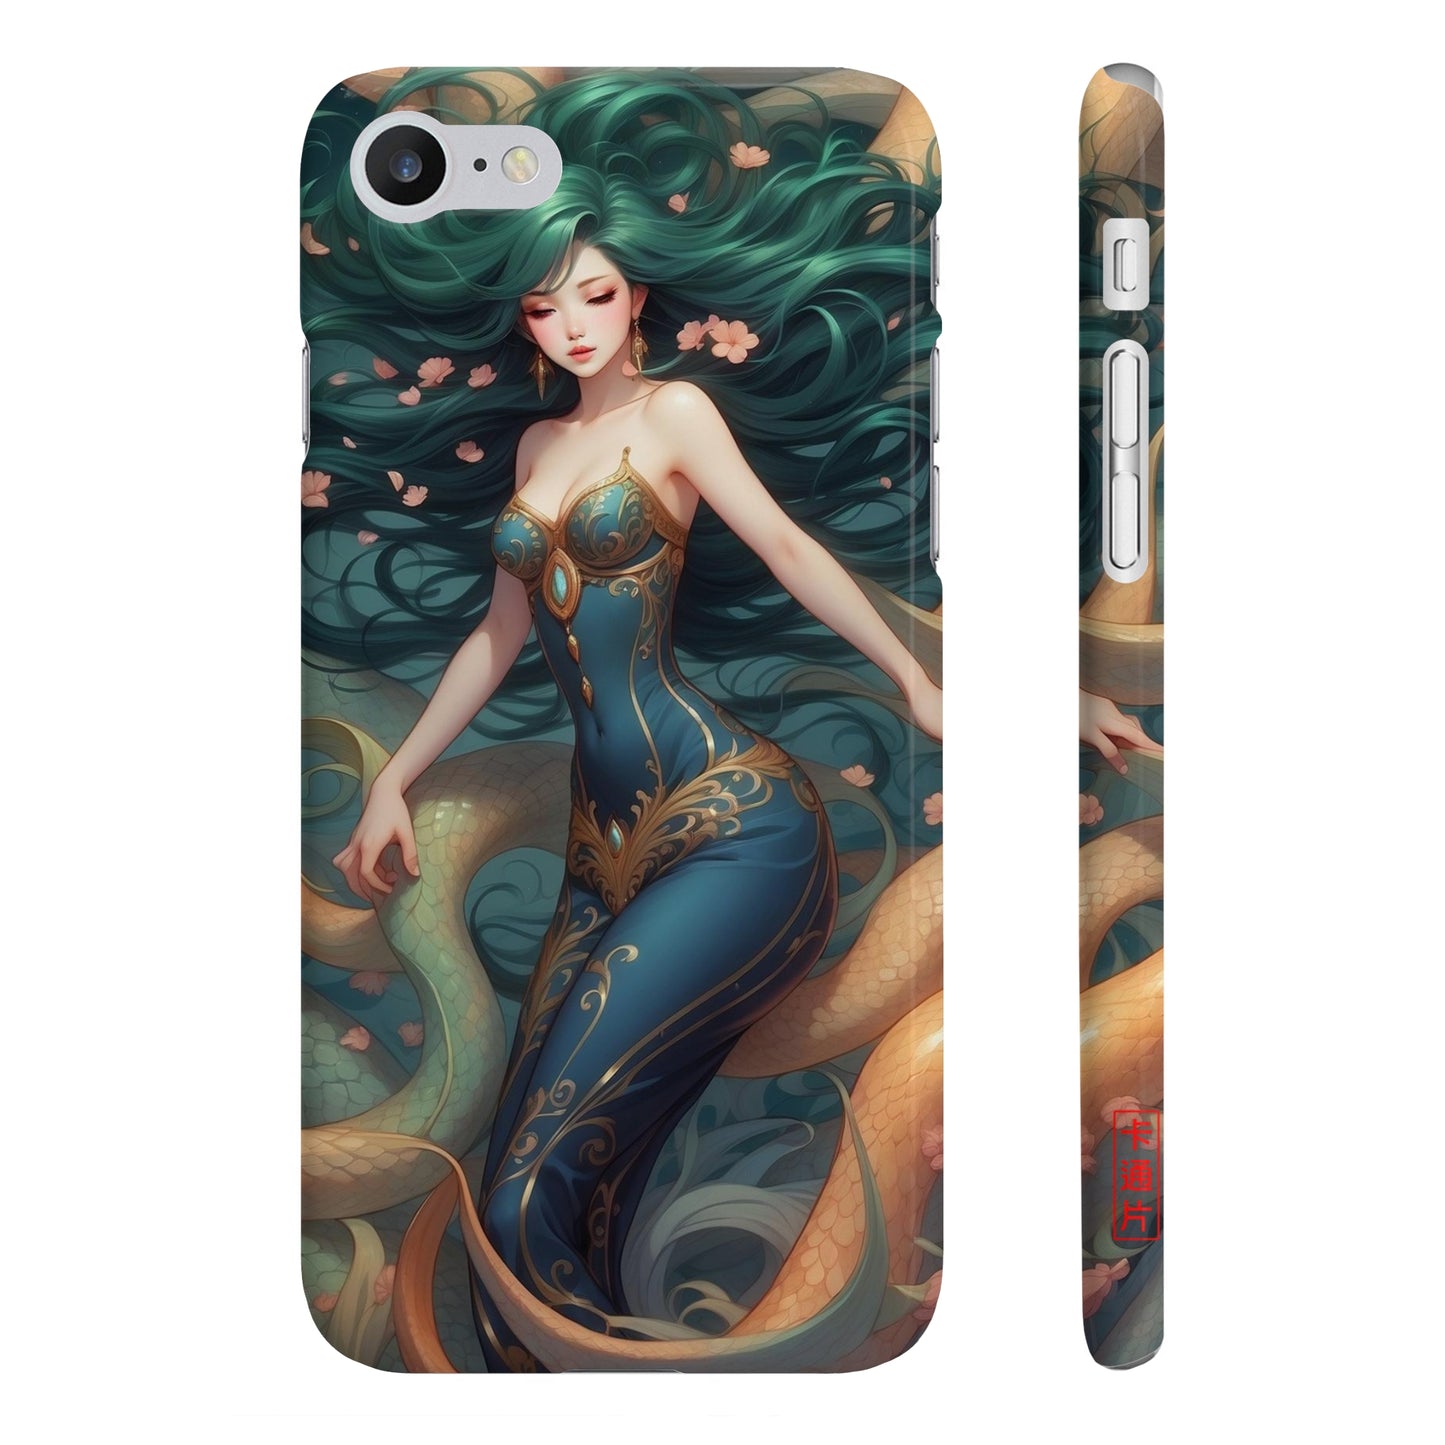 Kǎtōng Piàn - Mermaid Collection - 031 - Slim Phone Cases Printify